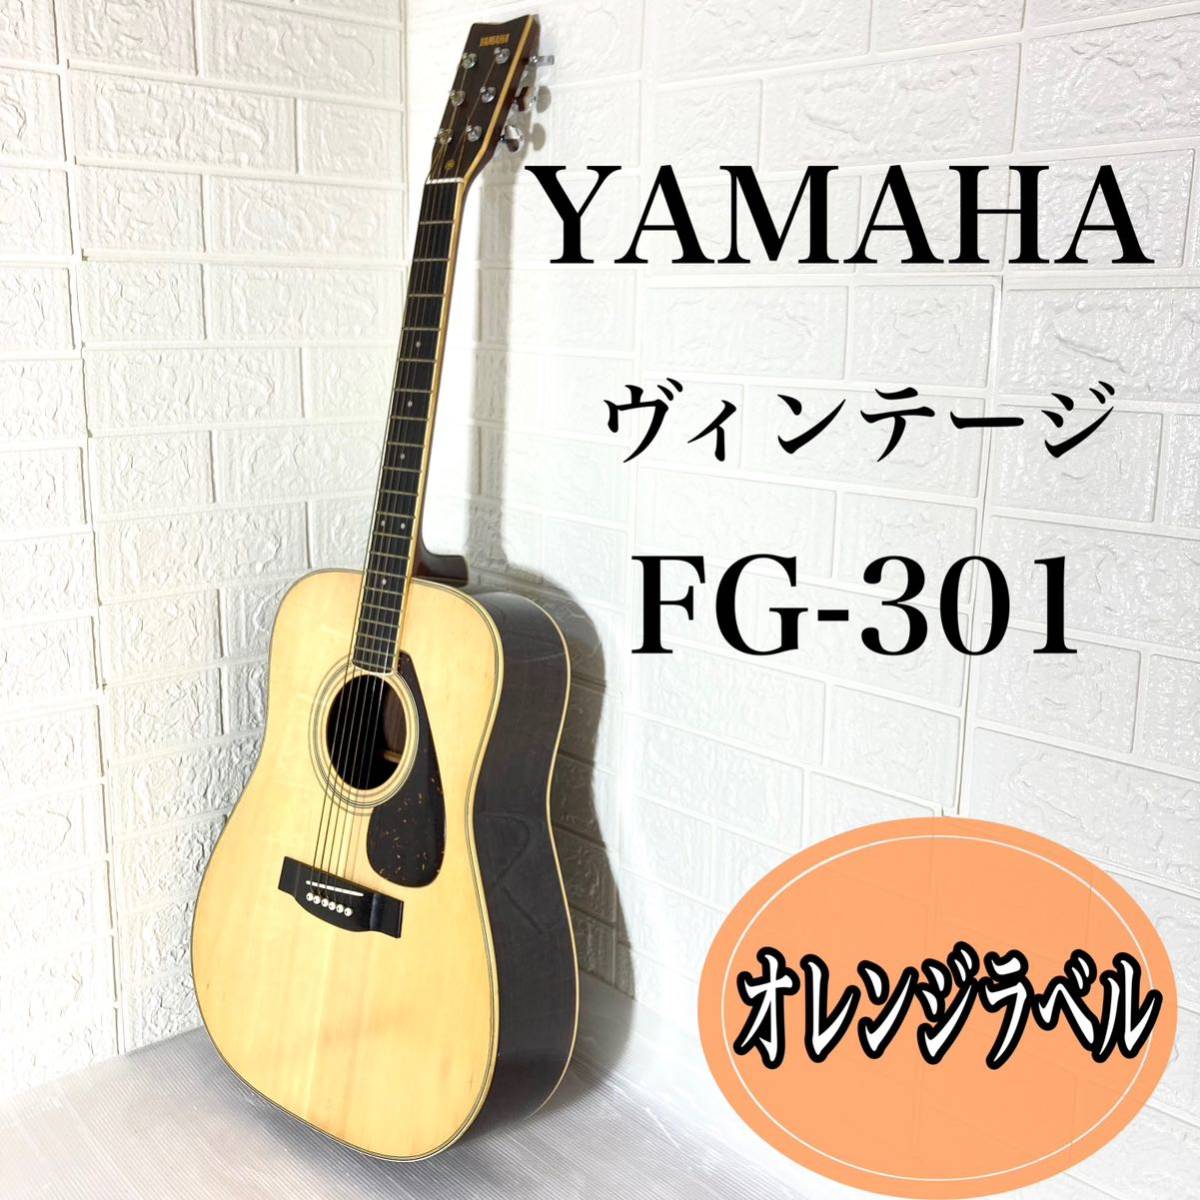 YAMAHA ヤマハ FG-401 1976年製 オレンジラベル ヴィンテージ 